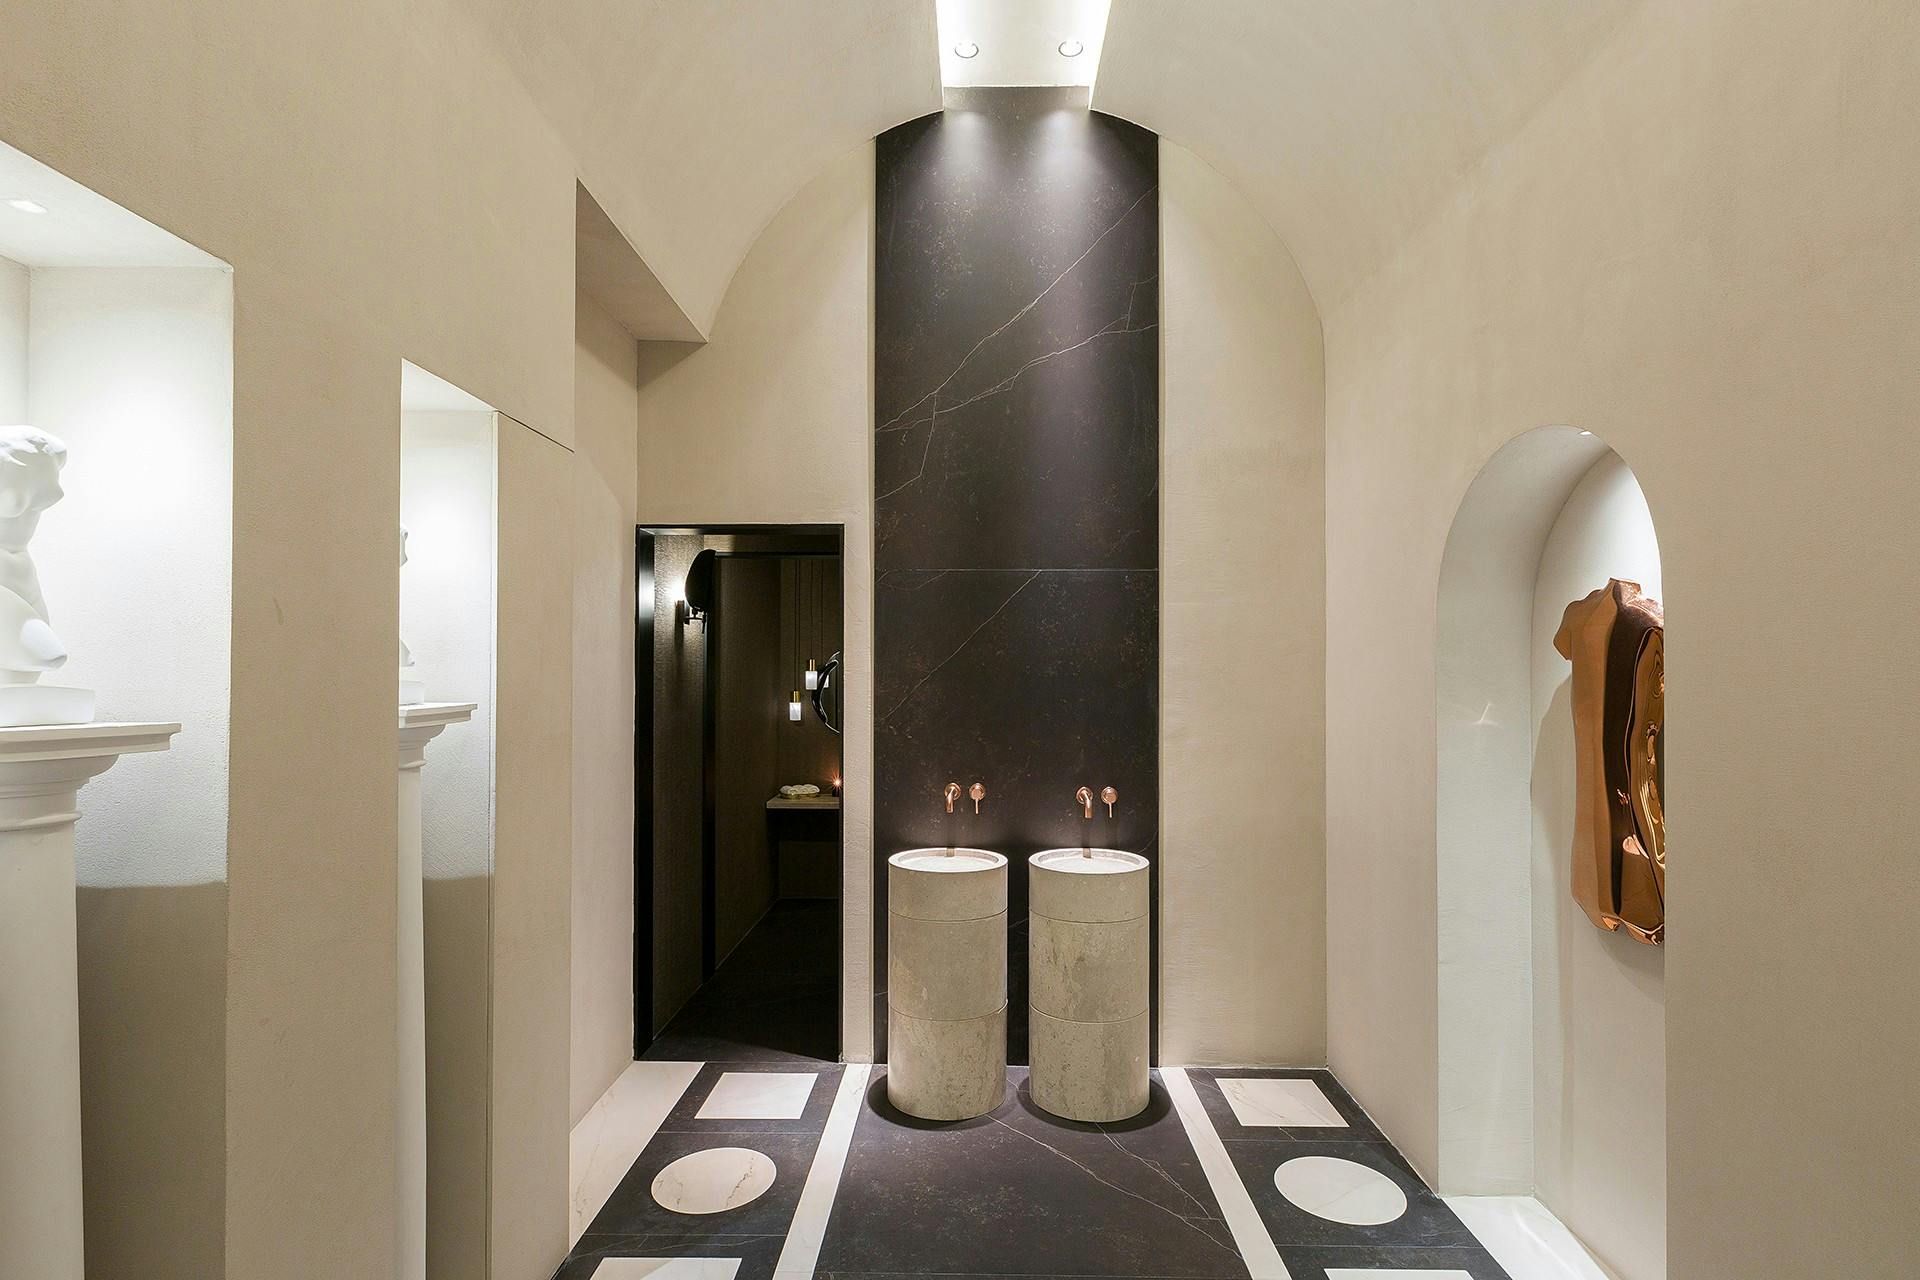 Imagen número 77 de Un baño público contemporáneo inspirado en las termas romanas